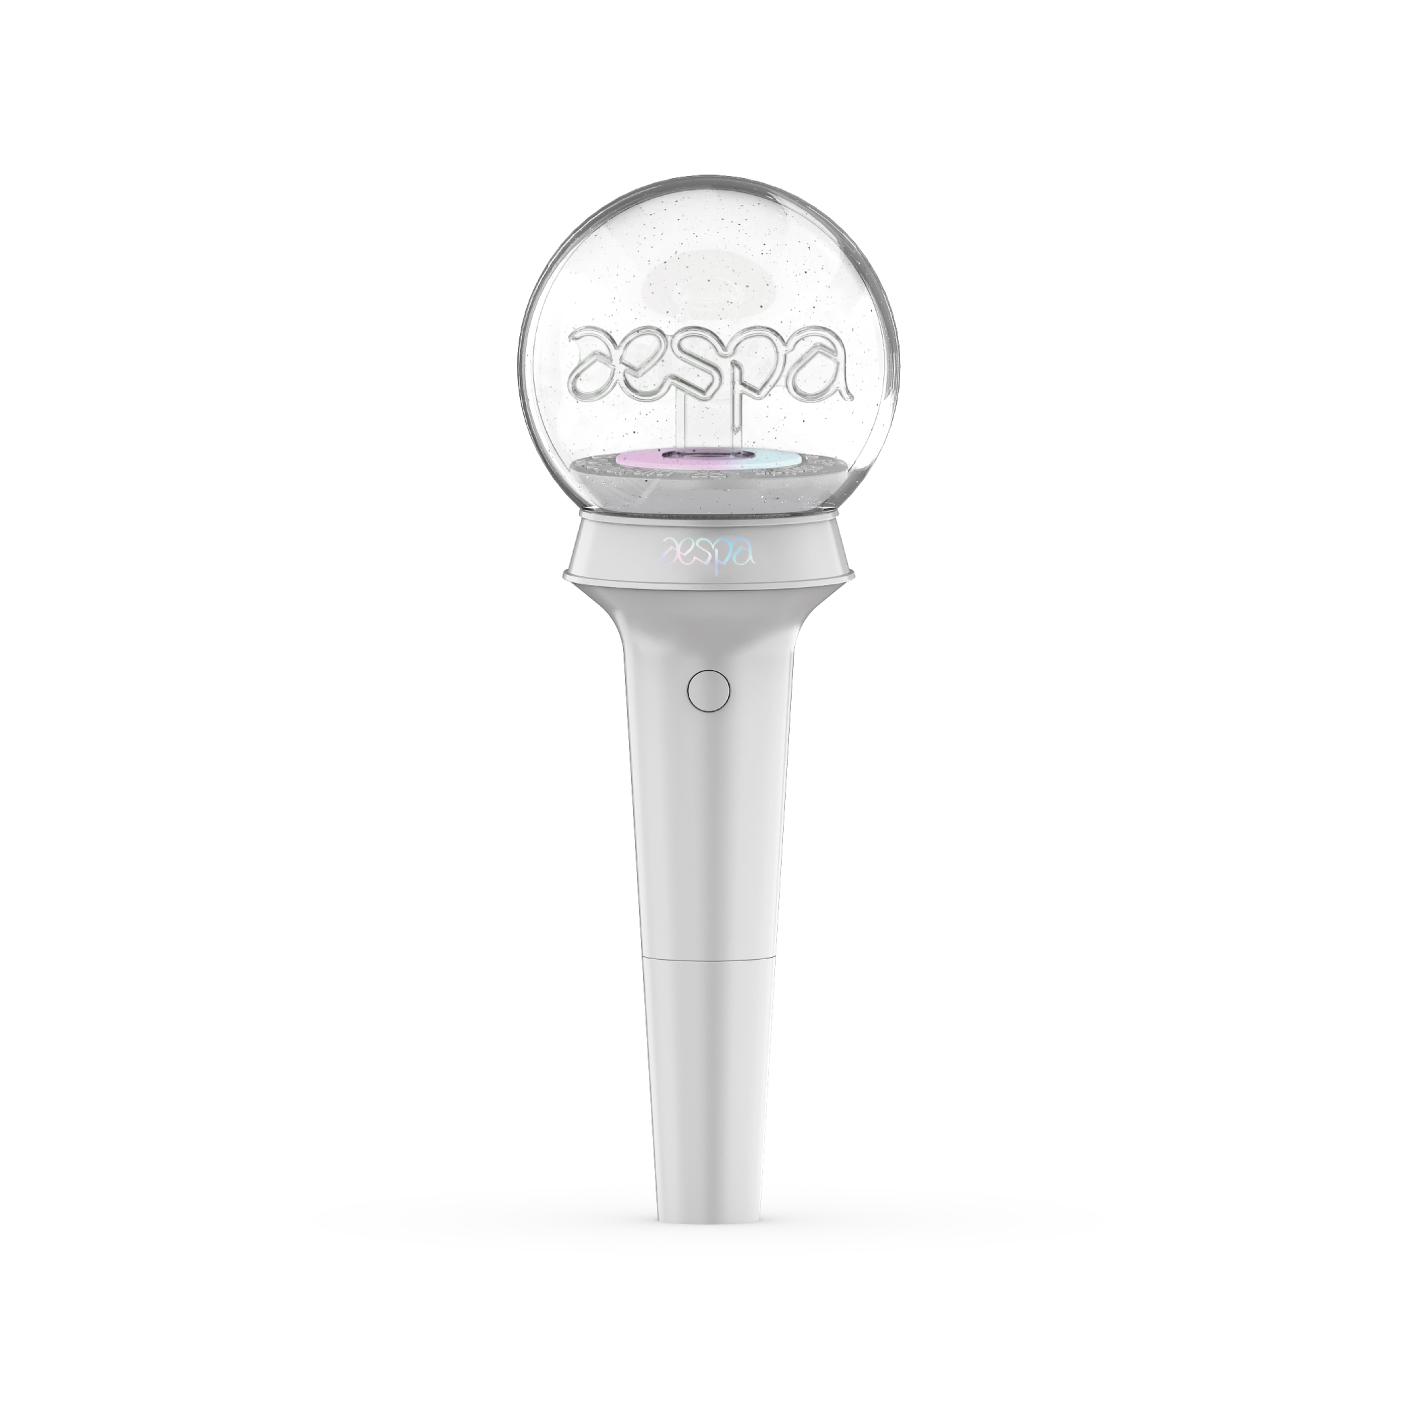 에스파(aespa) - 공식 응원봉(OFFICIAL FANLIGHT)케이팝스토어(kpop store)